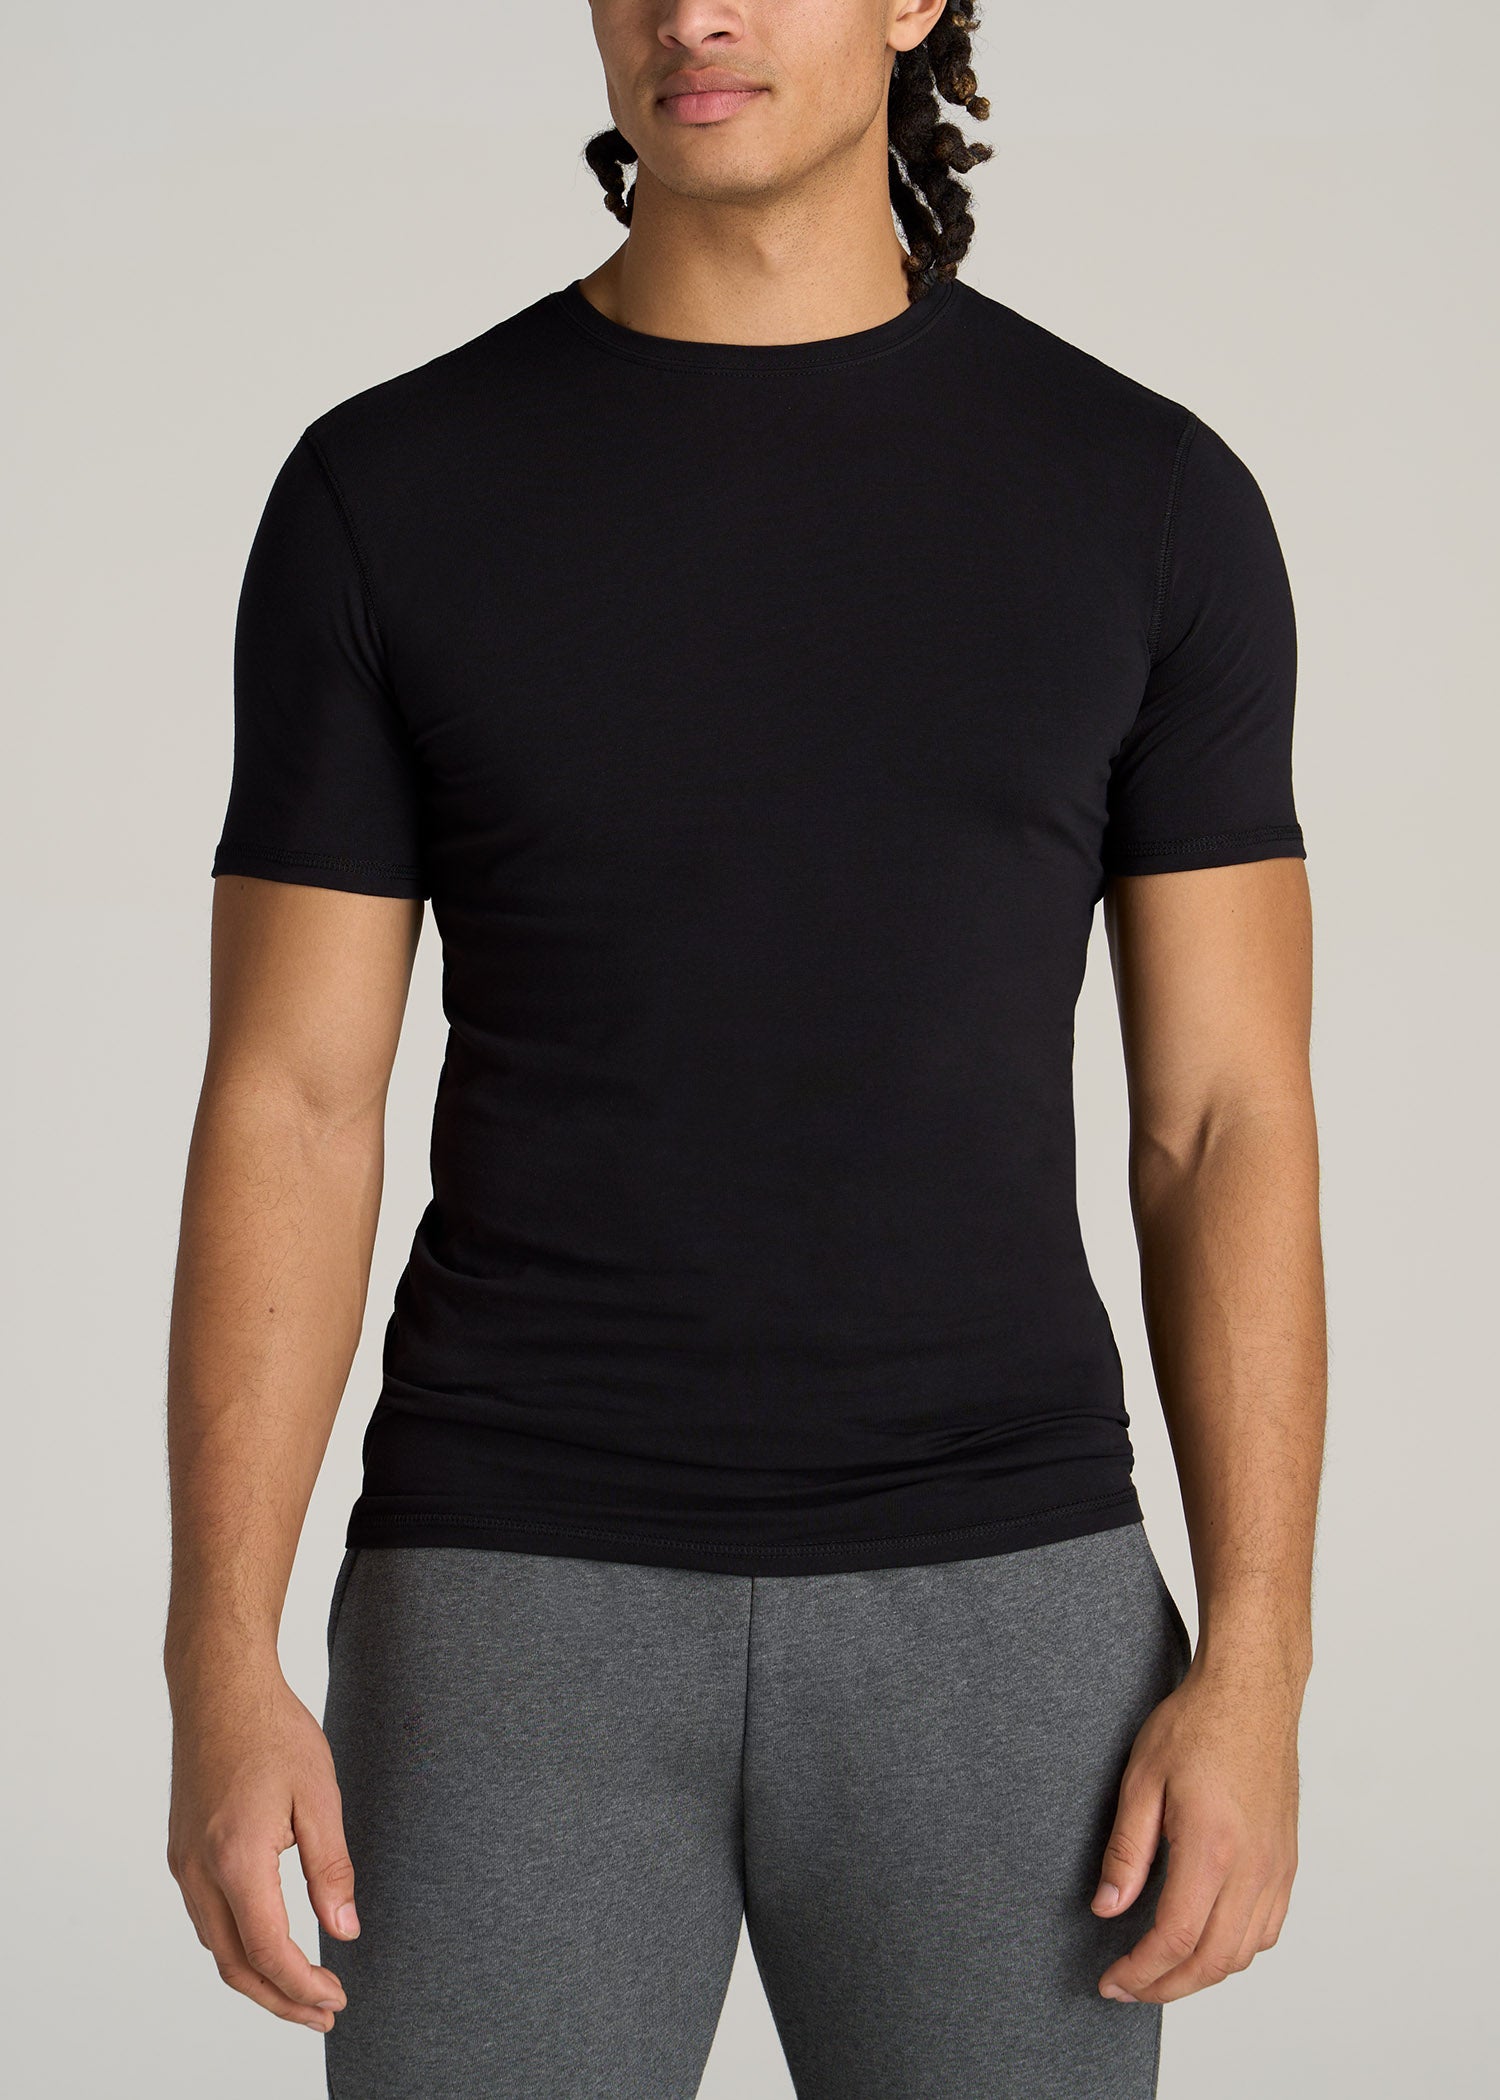 Black T-Shirt | Tall Men's Essentials | Tall